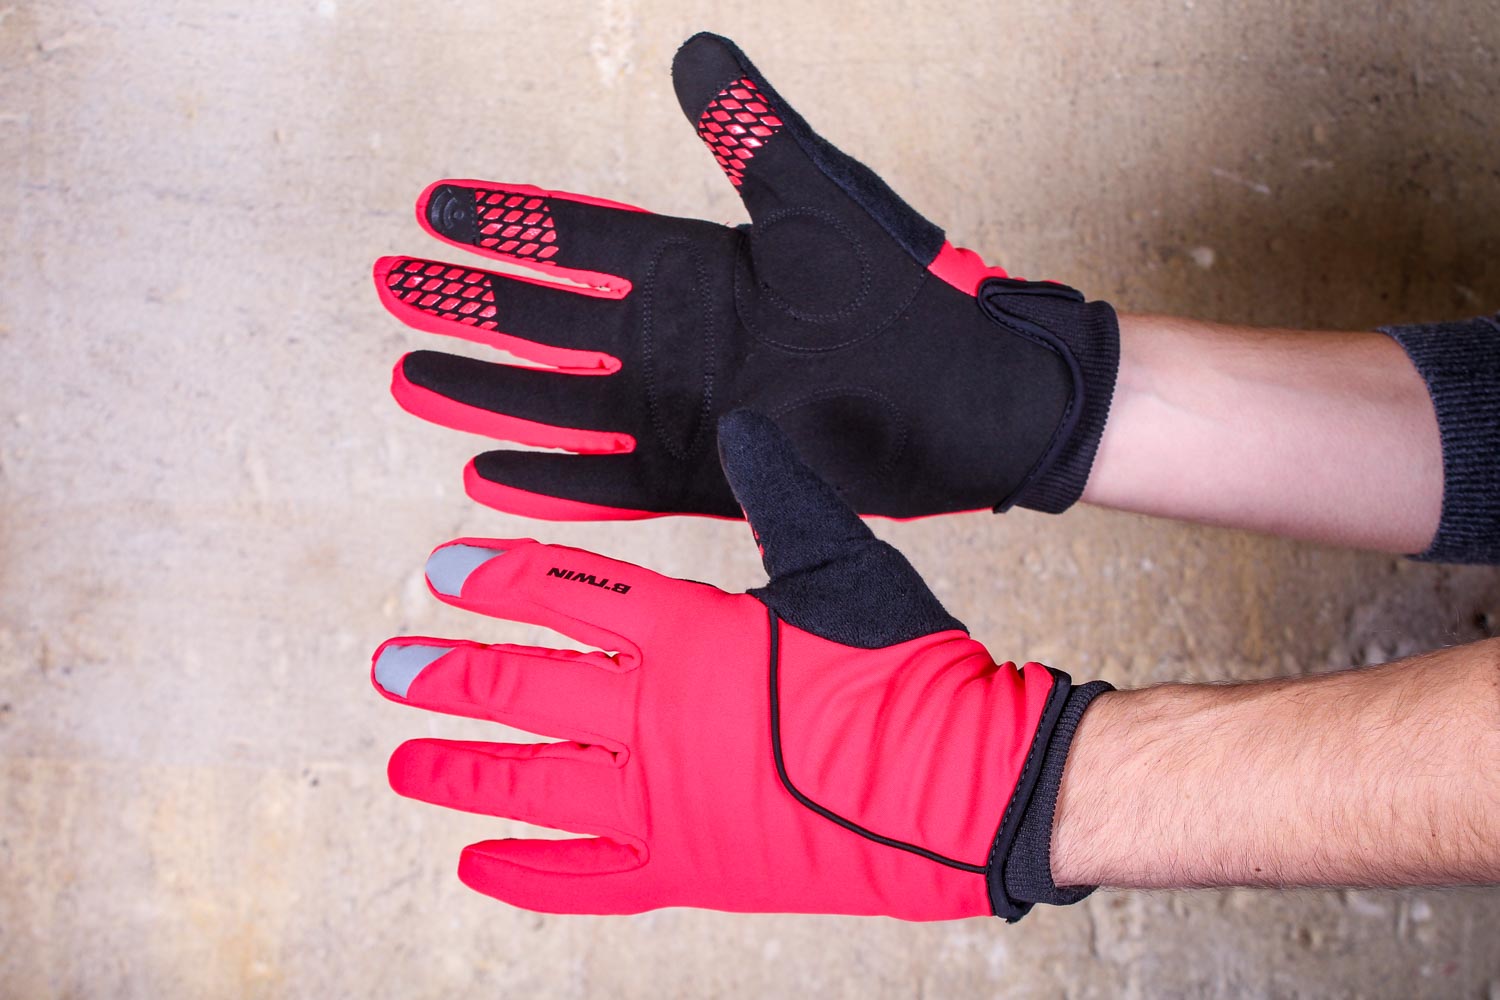 btwin hand gloves